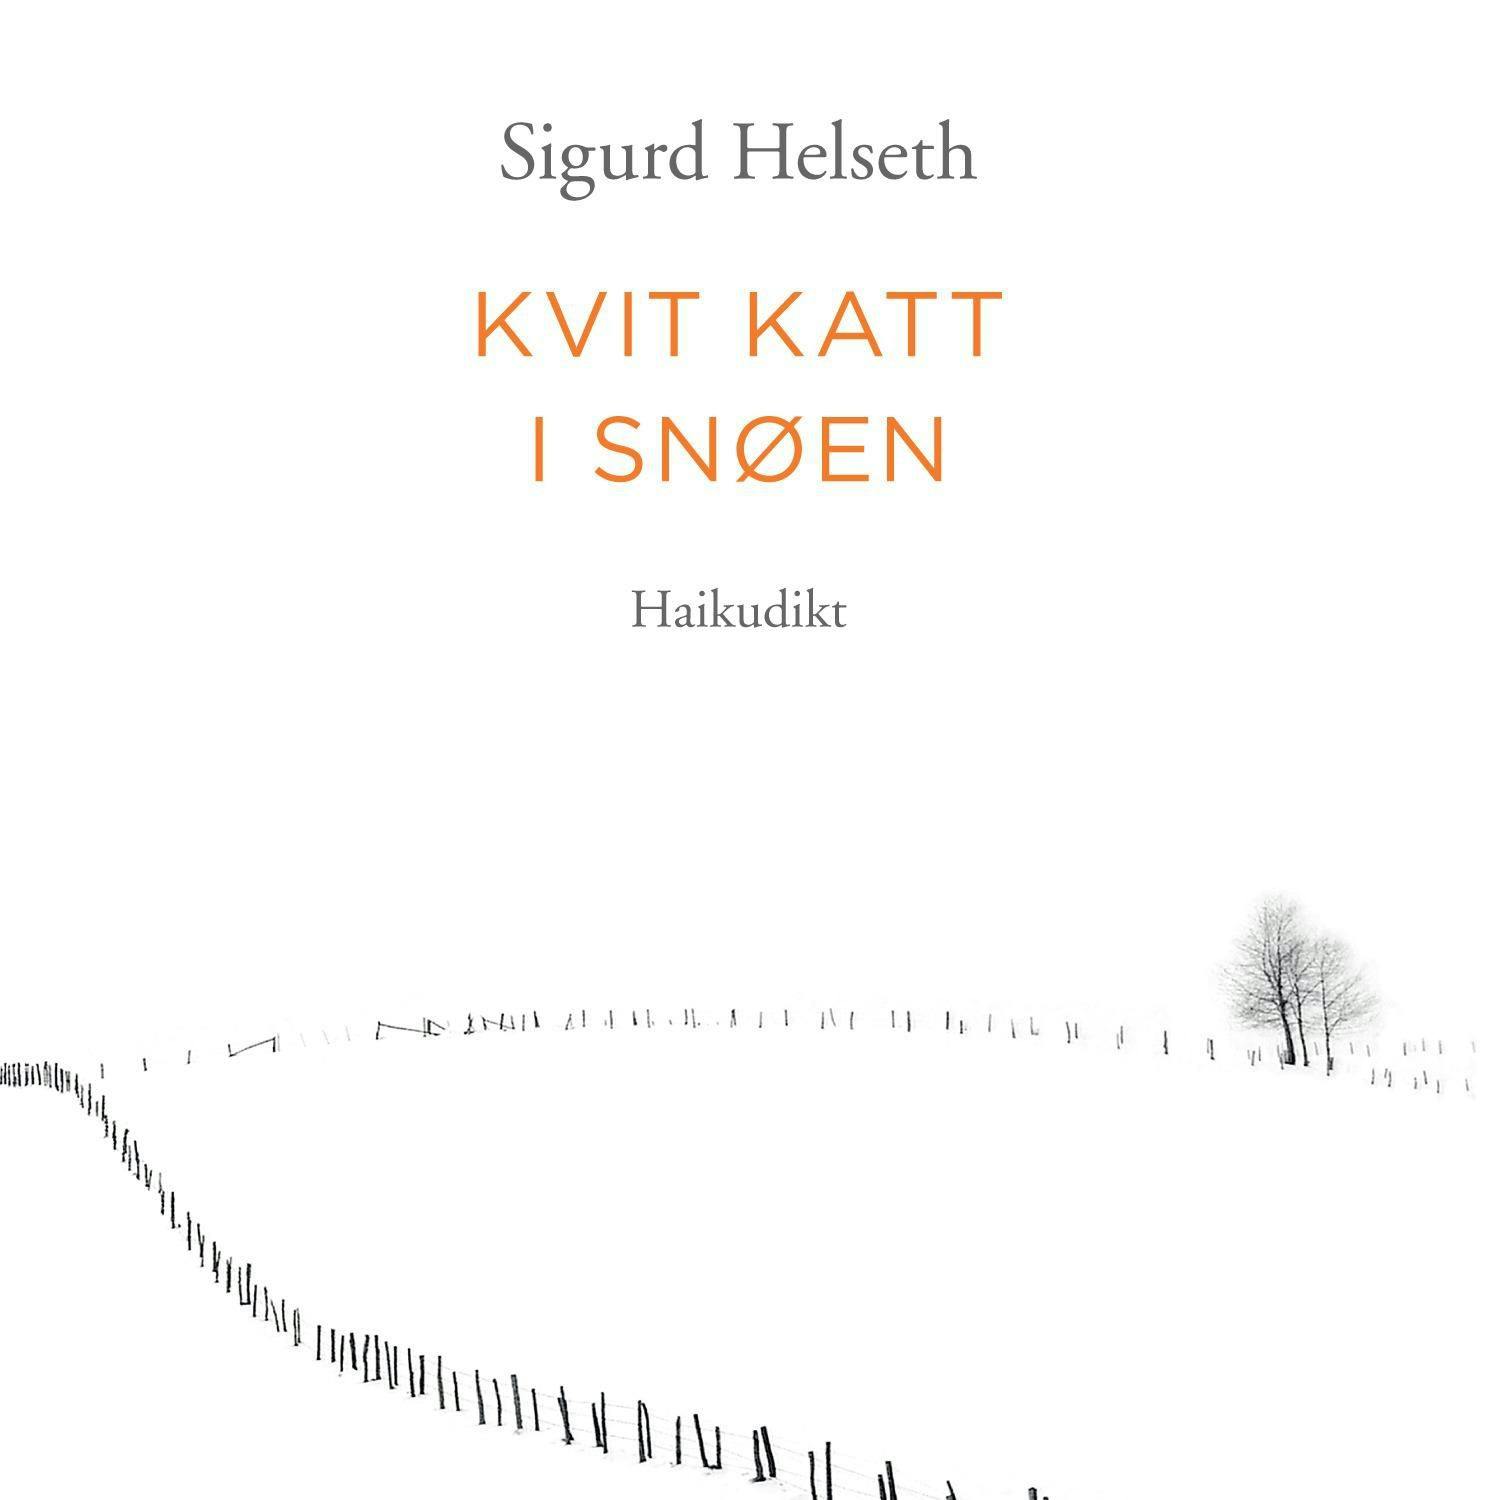 Kvit katt i snøen - Haikudikt - Sigurd Helseth